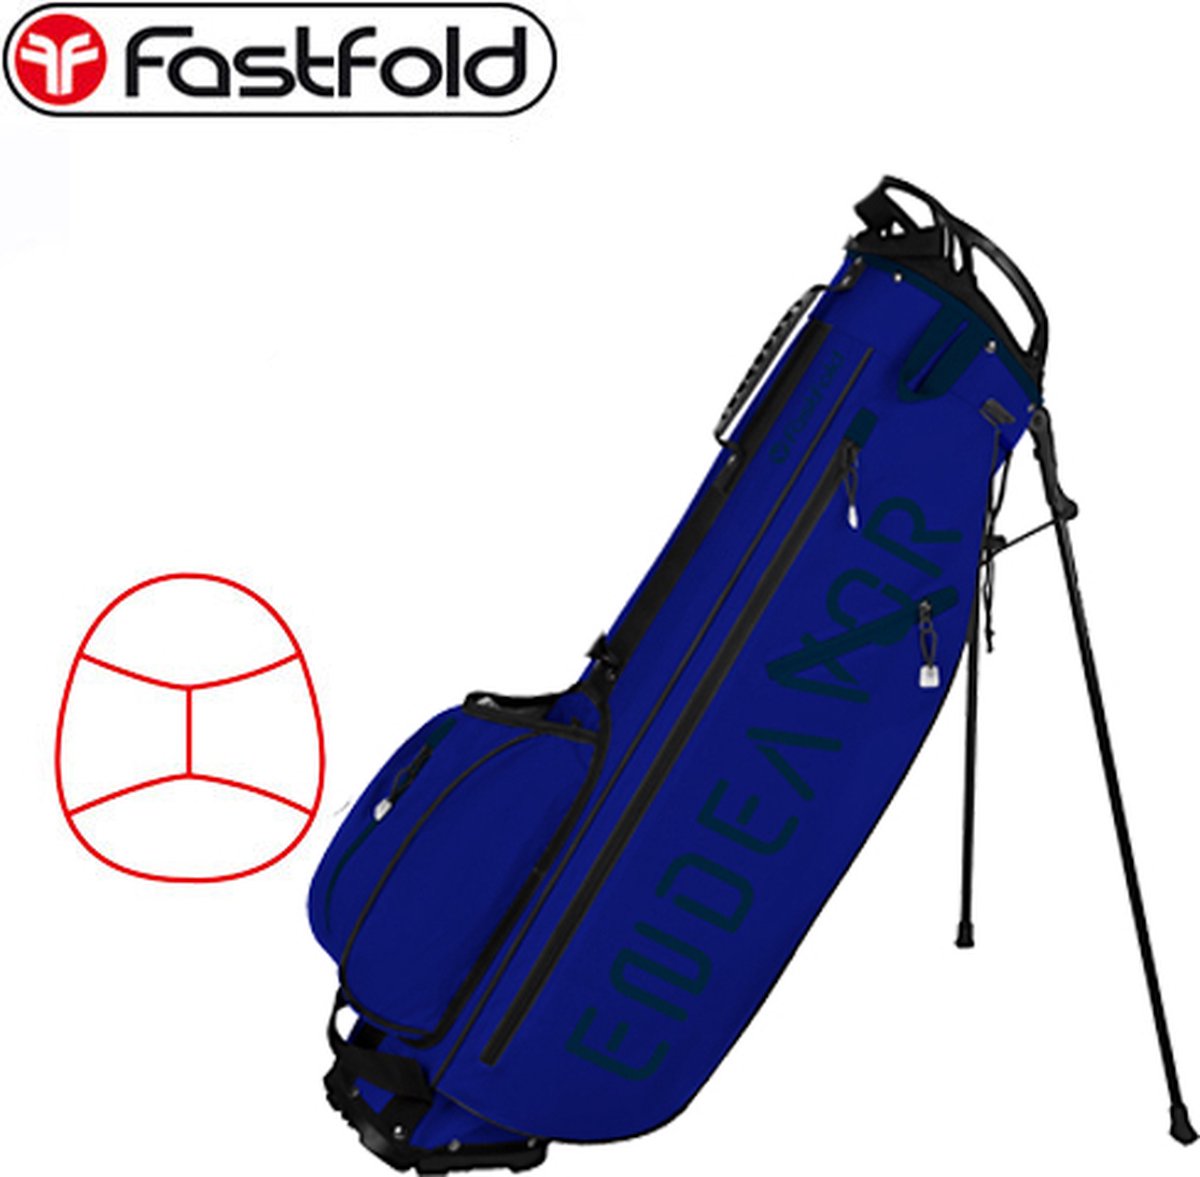 Fastfold Endeavor 7 inch Standbag, lichtblauw